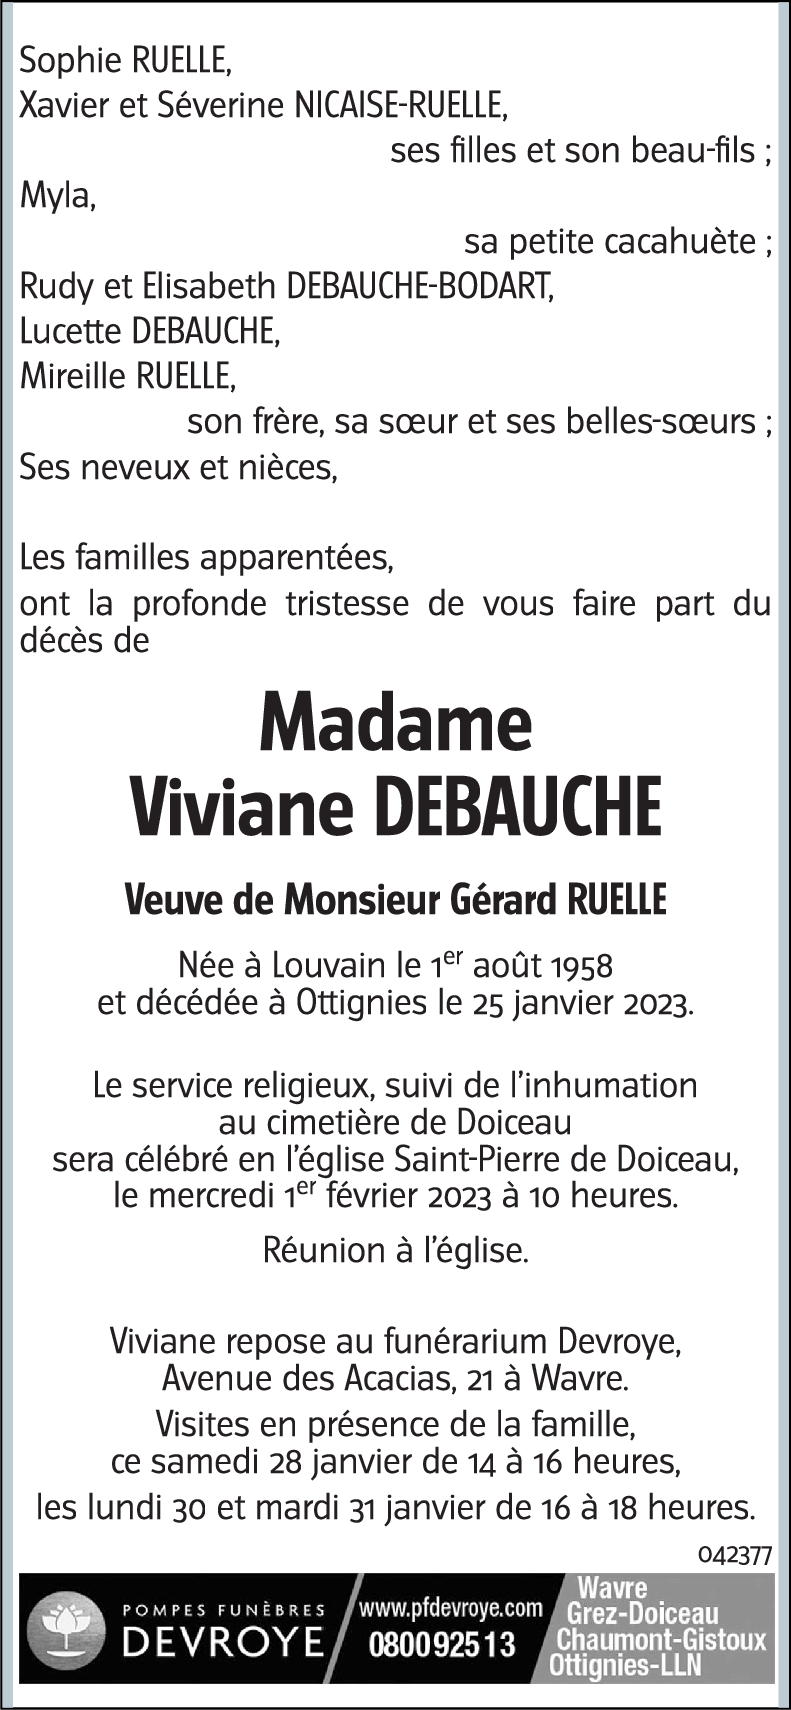 Viviane Debauche